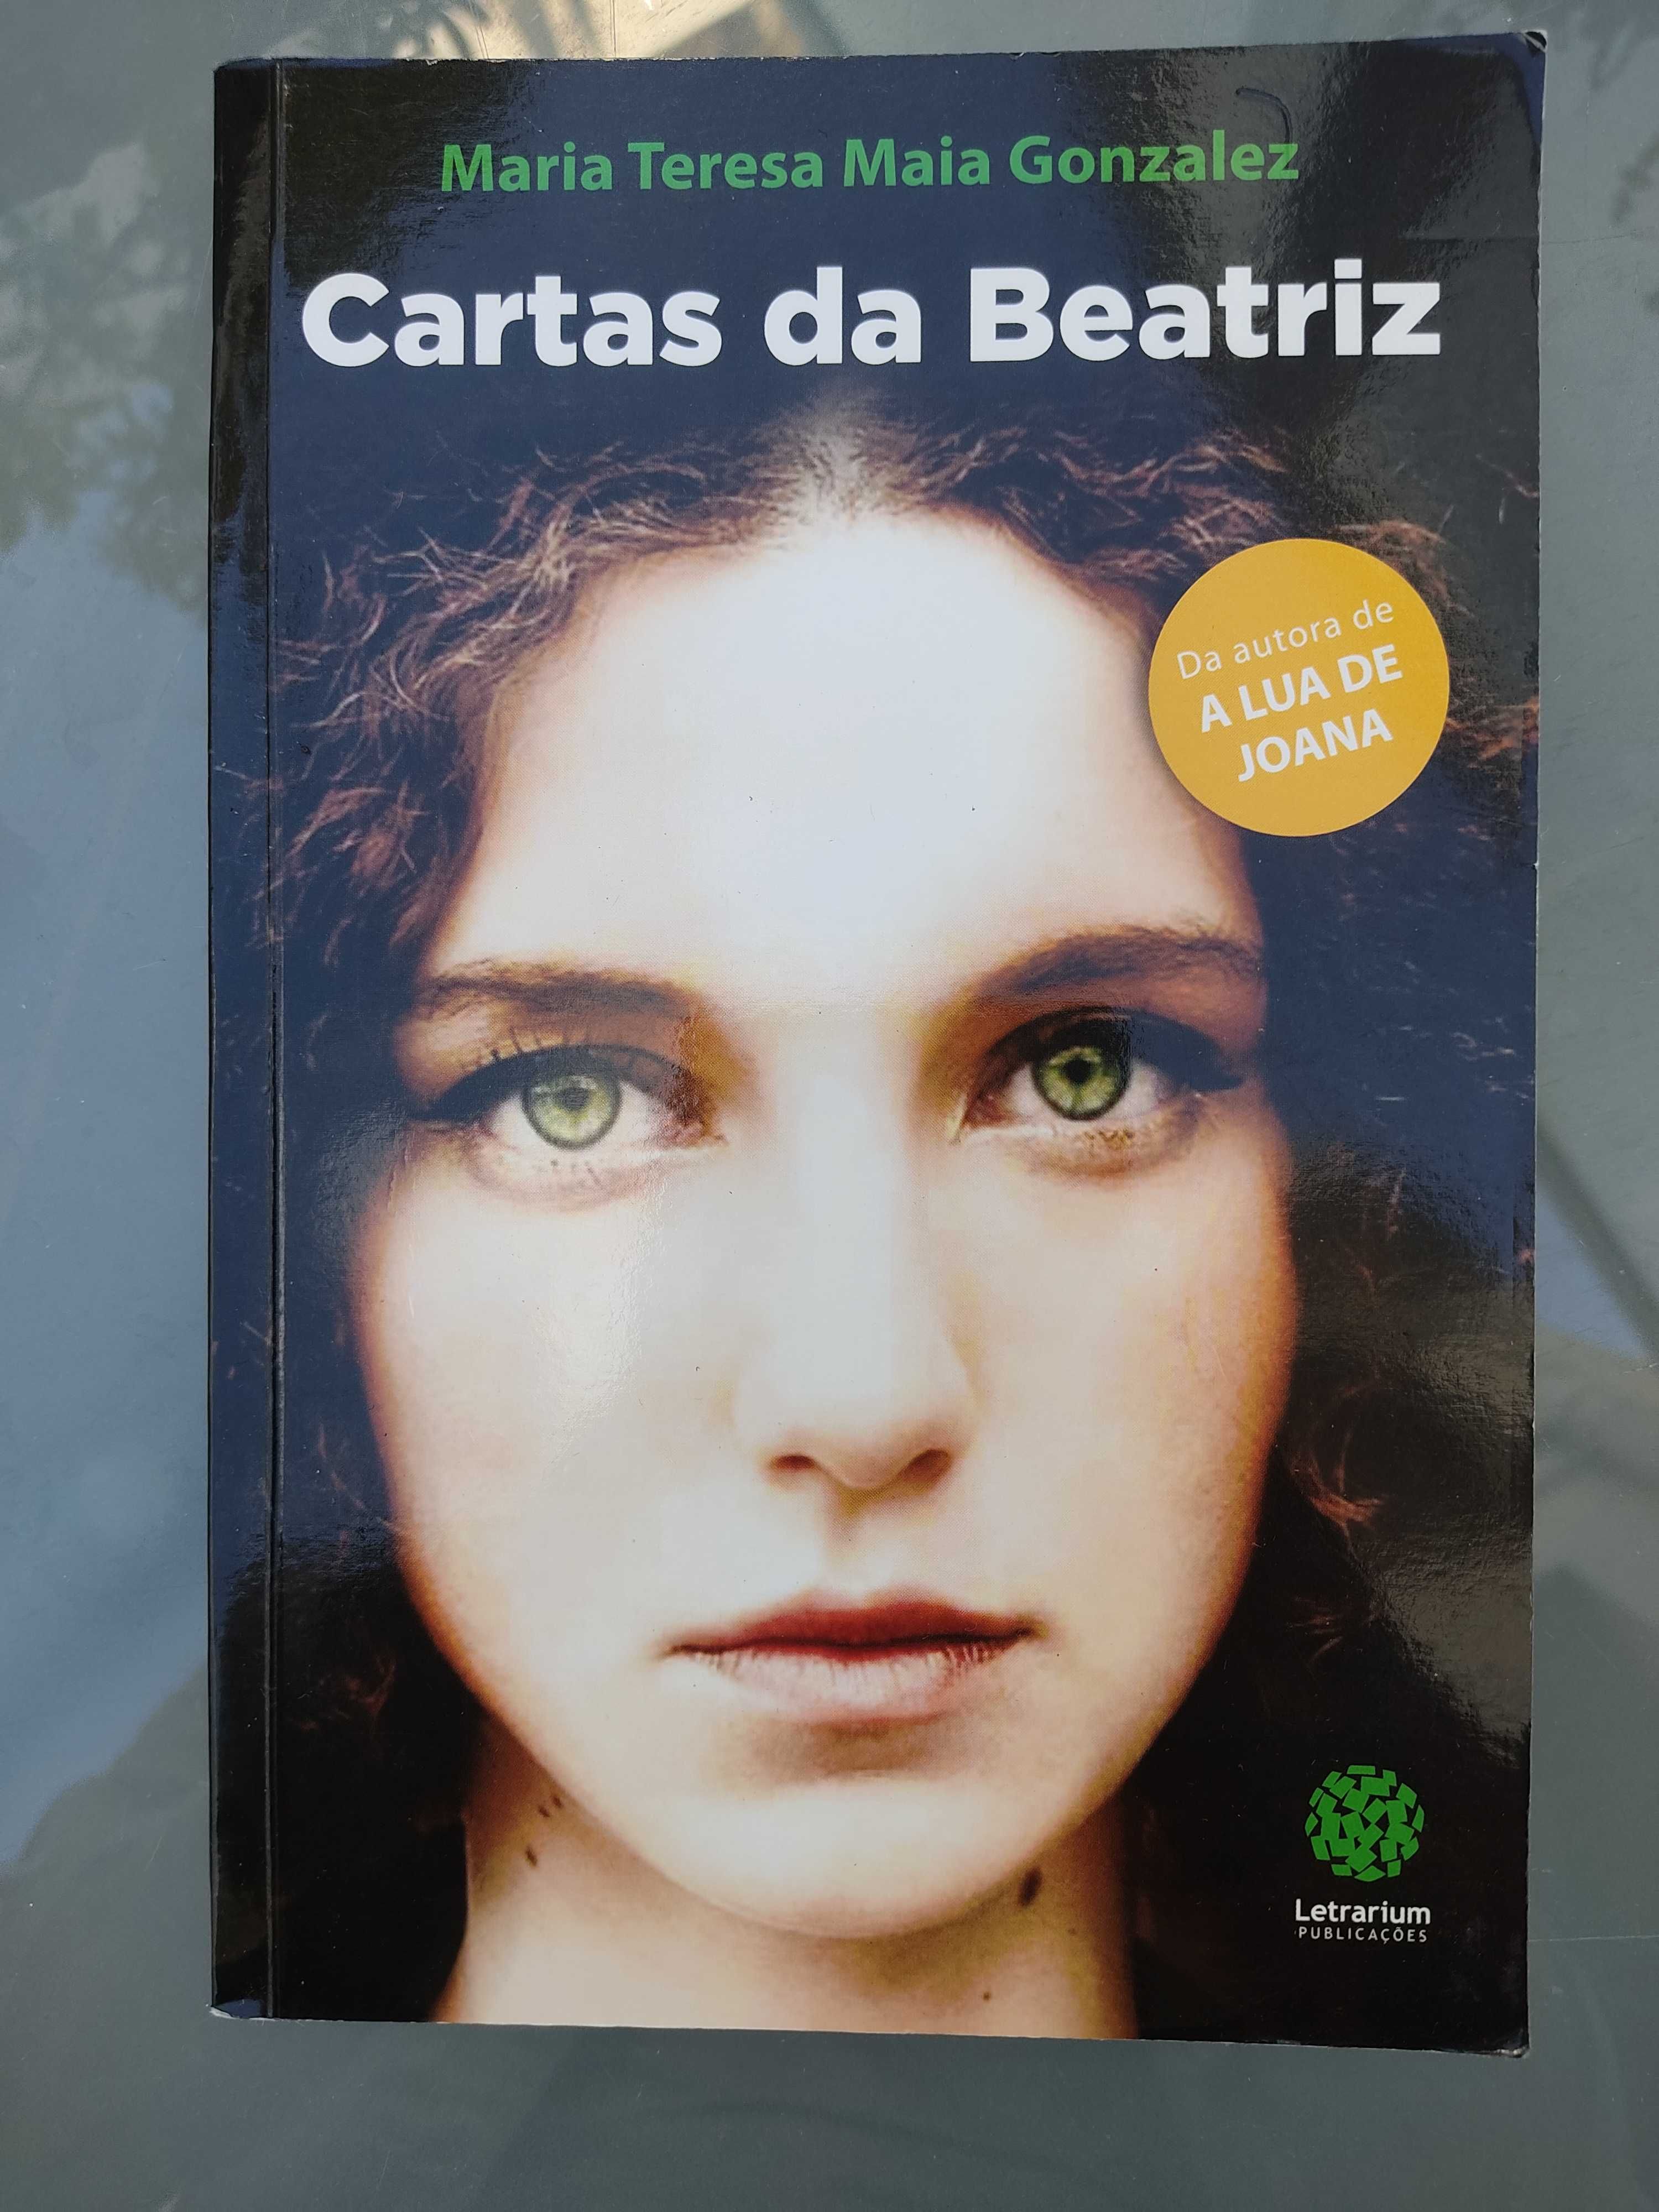 Vários livros de autores portugueses [TODOS A 5€] •como novos•